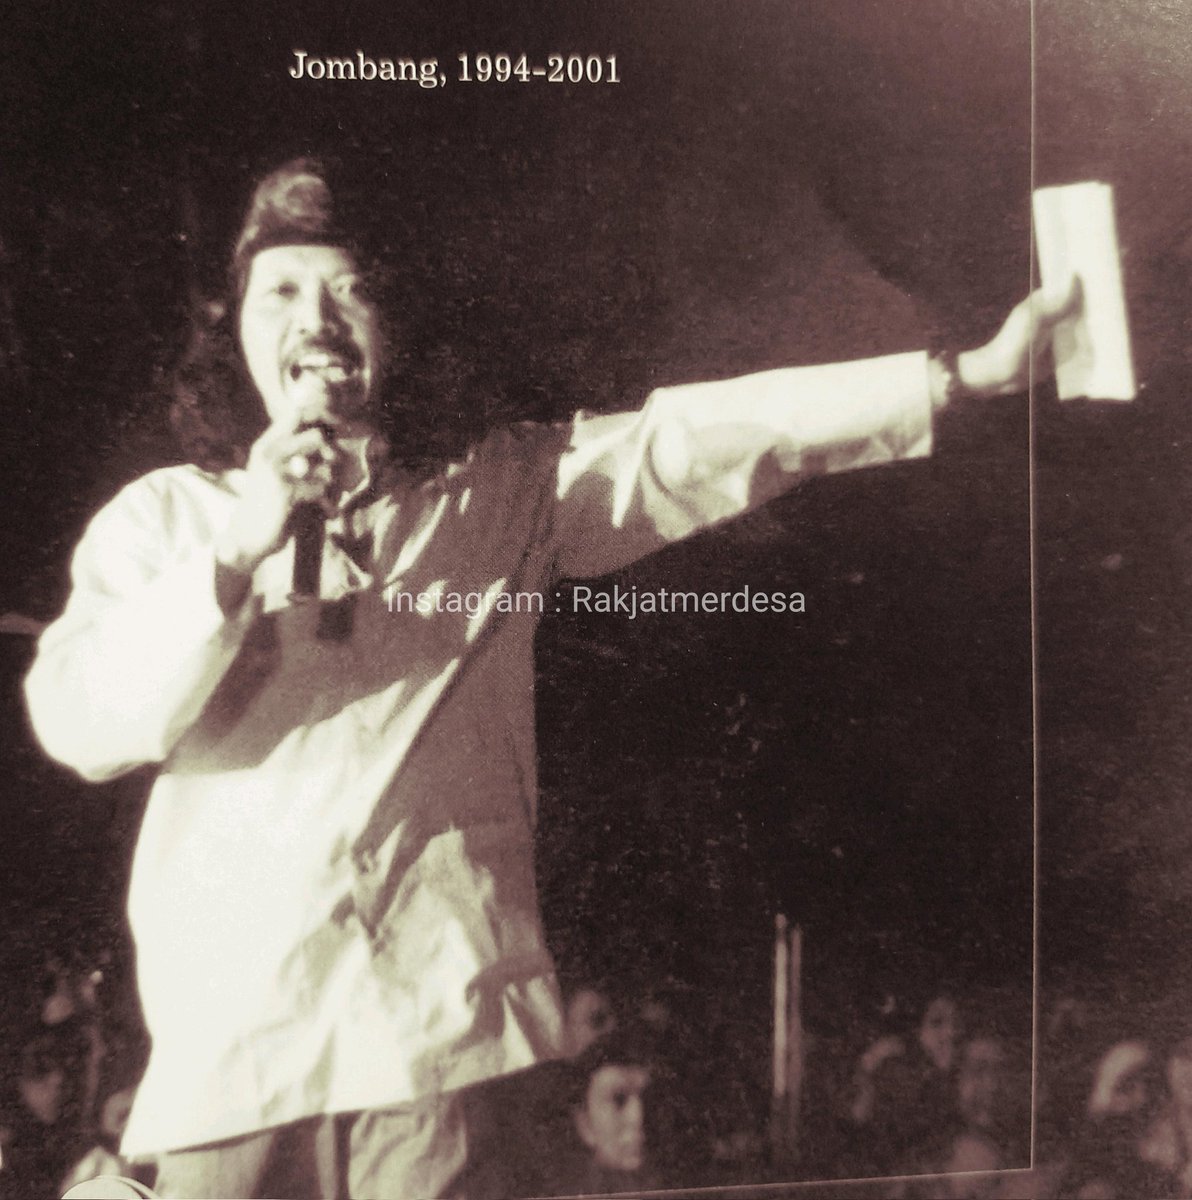 Hari ini, tepatnya 26 tahun yang lalu tanggal 11 Mei 1998, 10 hari sebelum Soeharto lengser merupakan rangkaian sejarah yang sangat teramat penting bagi bangsa ini. Cak Nun menerbitkan 'selebaran terang benderang' bertanda Padhangmbulan.